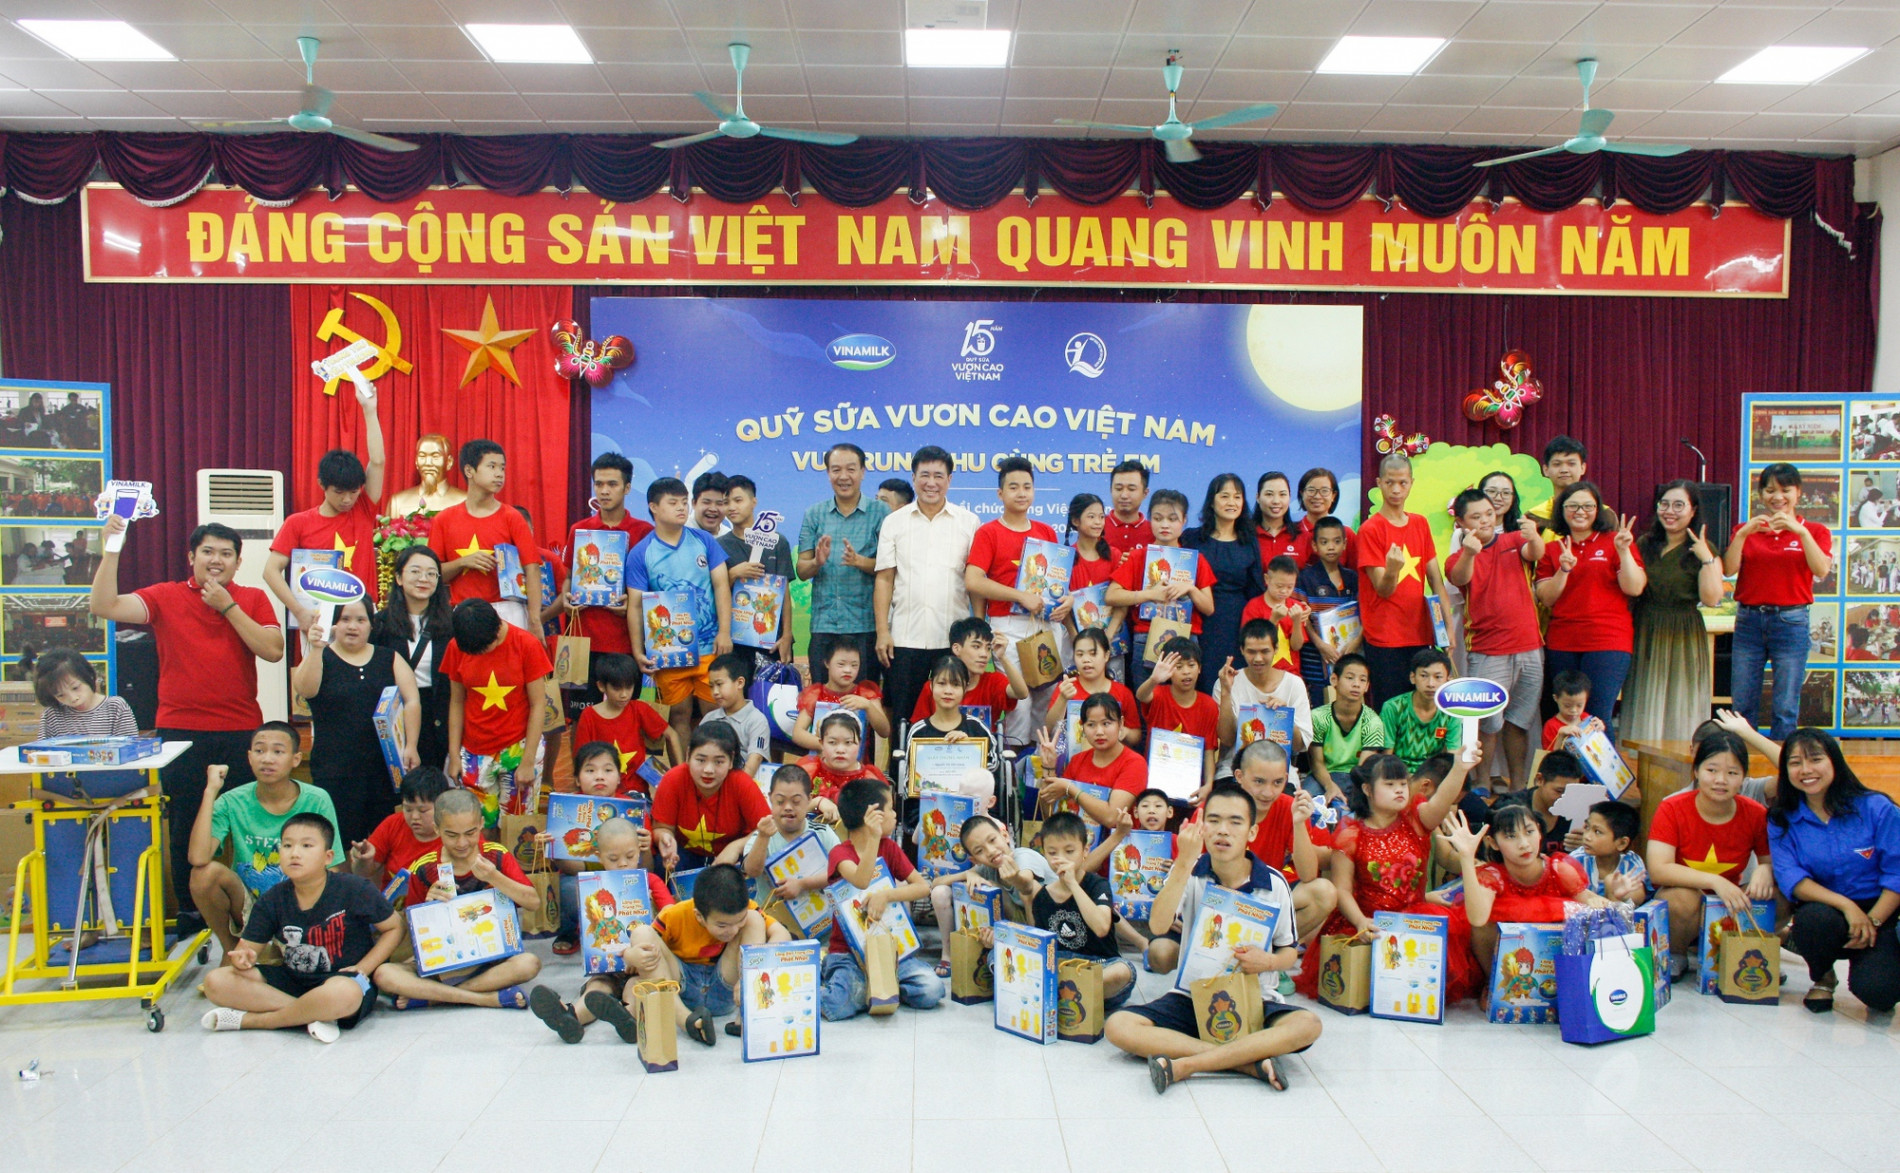 Thêm một mùa trung thu ấm áp trong hành trình 15 năm của Quỹ sữa Vươn cao Việt Nam - Ảnh 1.